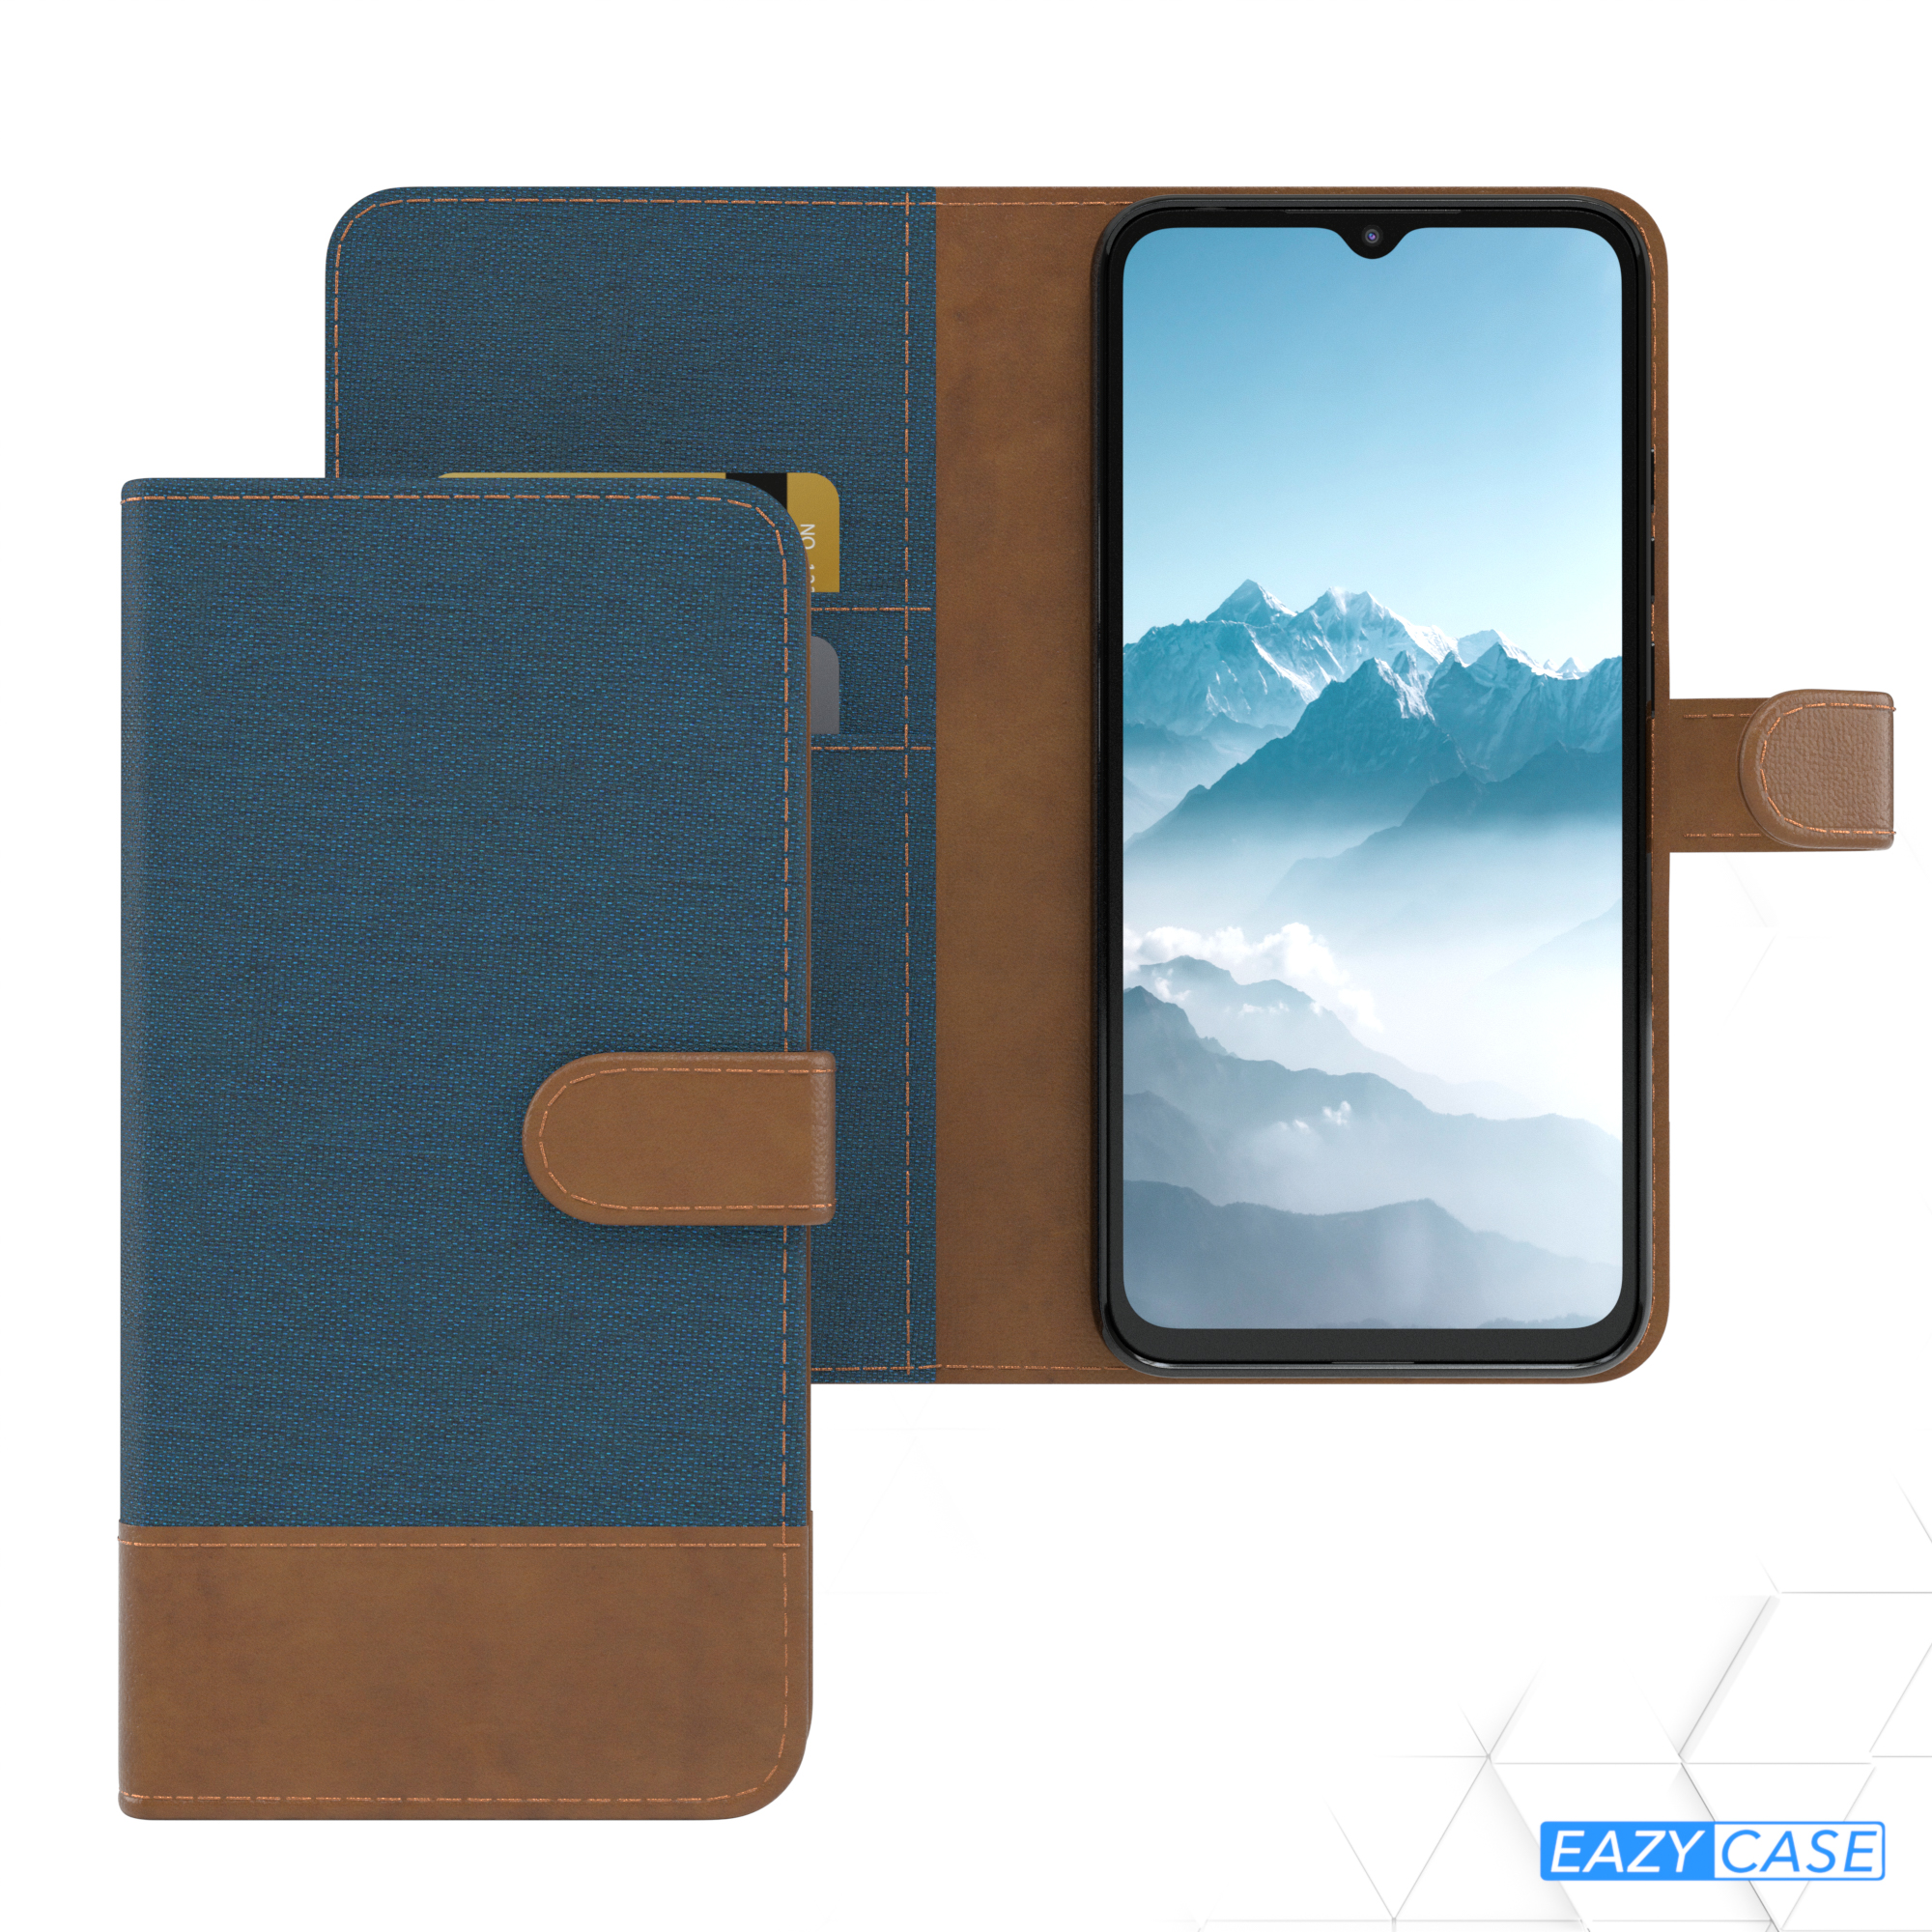 EAZY CASE Bookcover, 9C, Blau Jeans Xiaomi, mit Kartenfach, Klapphülle Bookstyle Redmi